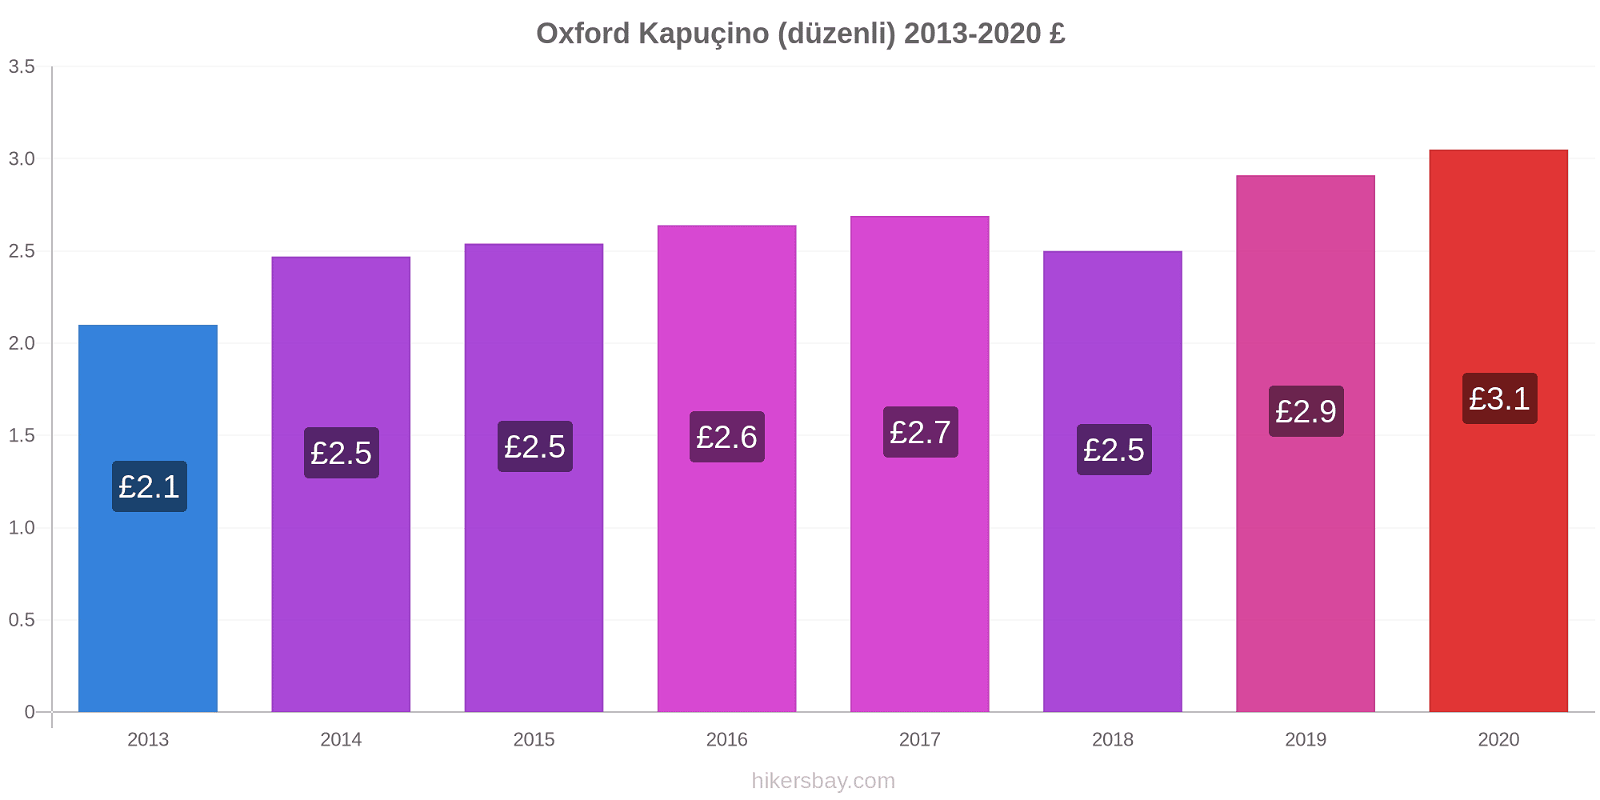 Oxford fiyat değişiklikleri Kapuçino (düzenli) hikersbay.com